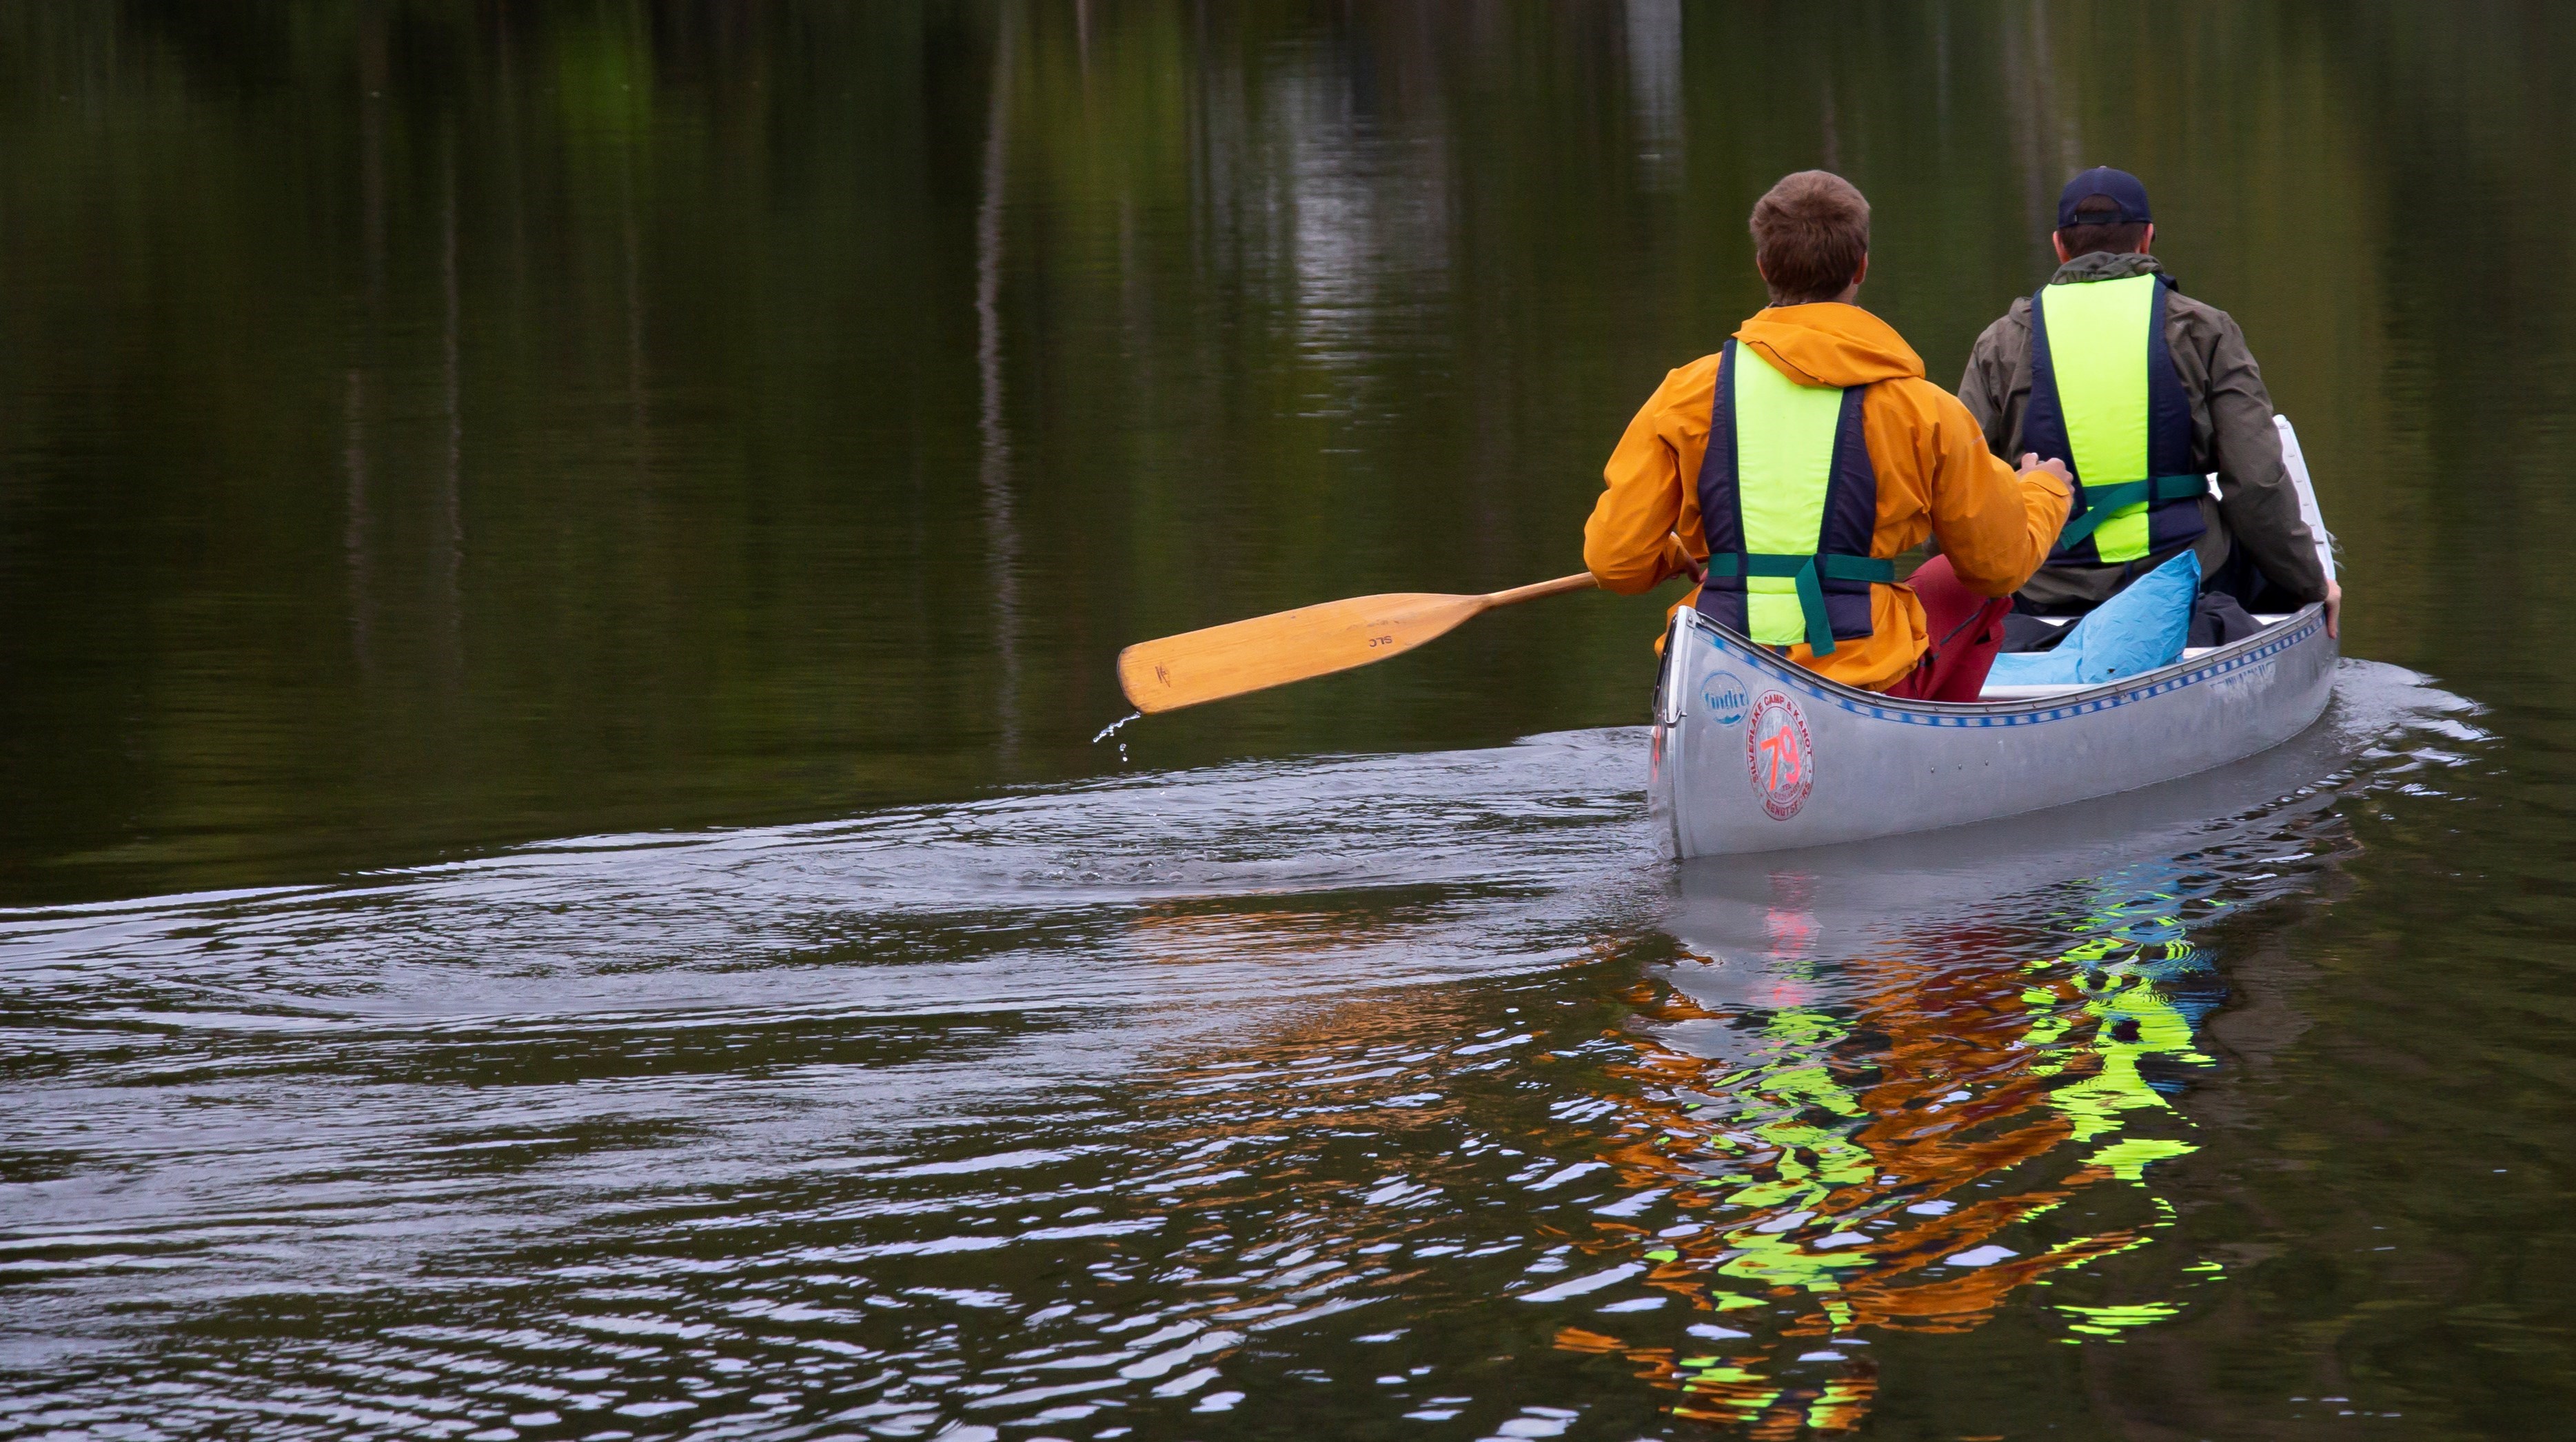 Två personer som paddlar kanot, fotograferade bakifrån.